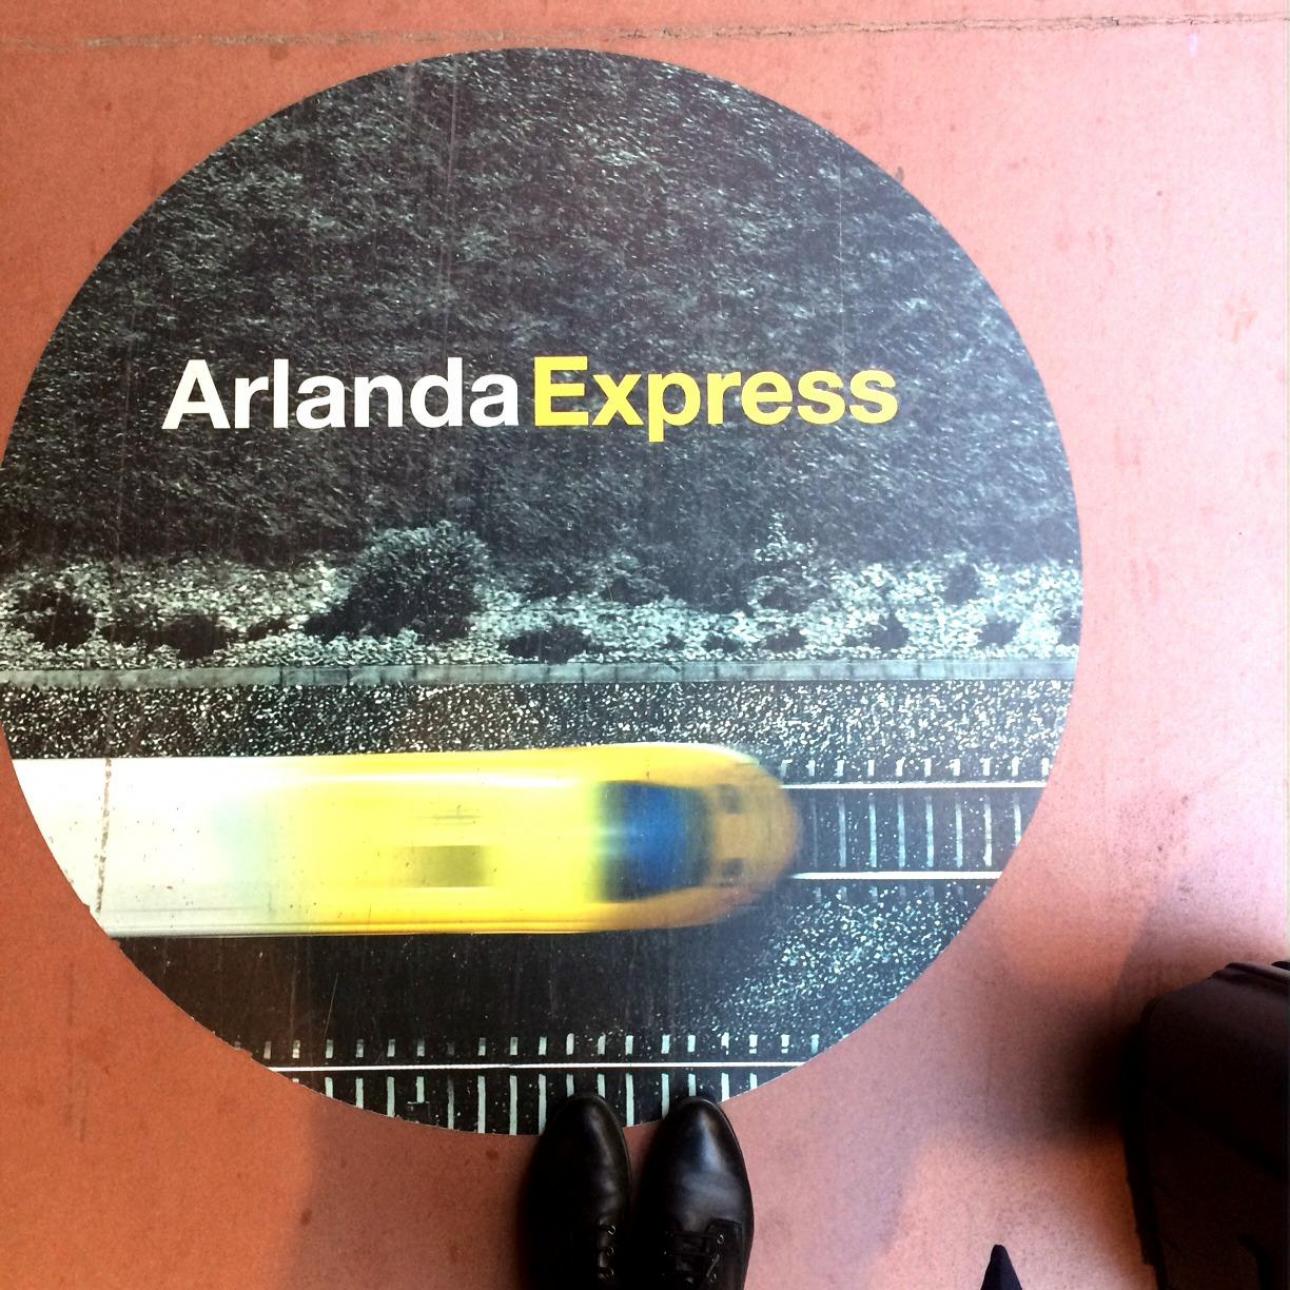 Arlanda Express er klart den nemmeste måde at komme fra Arlanda og ind til byen. Togene går med få minutters mellemrum, og man kan købe billetter i automater samt i selve toget - her koster det dog 100 SEK ekstra.